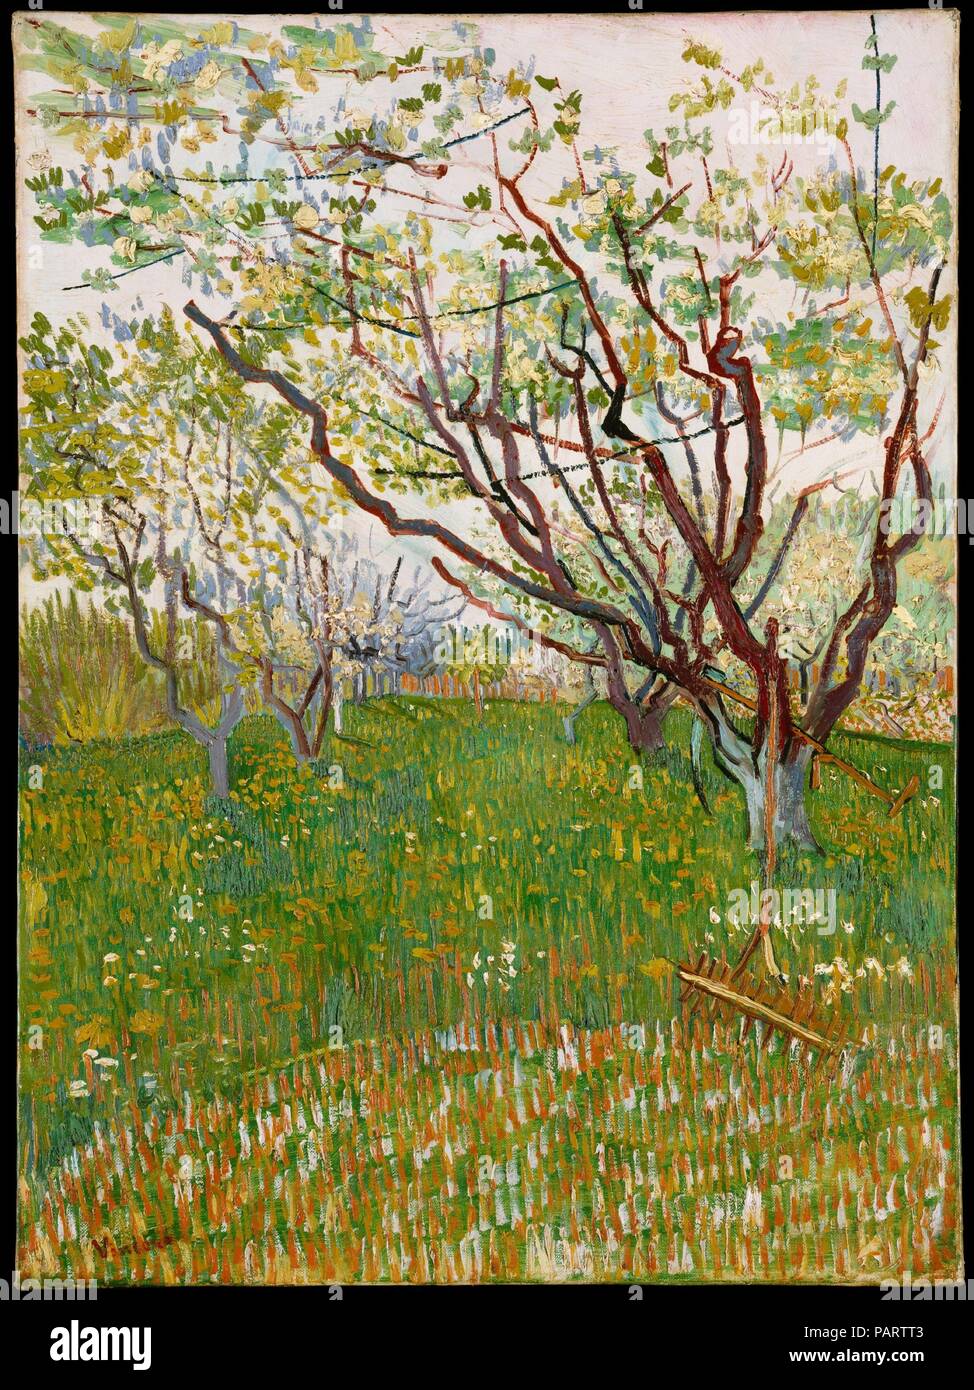 Le Verger en fleurs. Artiste : Vincent van Gogh (Néerlandais, Zundert 1853-1890 Auvers-sur-Oise). Dimensions : 28 1/2 x 21 in. (72,4 x 53,3 cm). Date : 1888. L'arrivée du printemps à Arles en 1888 trouvé dans un "Van Gogh fureur de travail.' Comme il l'écrit à son frère Théo, "les arbres sont en fleurs et j'aimerais faire un verger provençal de grande gaieté." Entre la fin mars et la fin avril, l'artiste consacré quatorze toiles pour l'objet, le travail dans une gamme de tailles, formats et styles. Cette composition, dominé par l'écart angulaire, allongées branches de l'arbres en herbe, témoigne de Van Gogh's annonce Banque D'Images